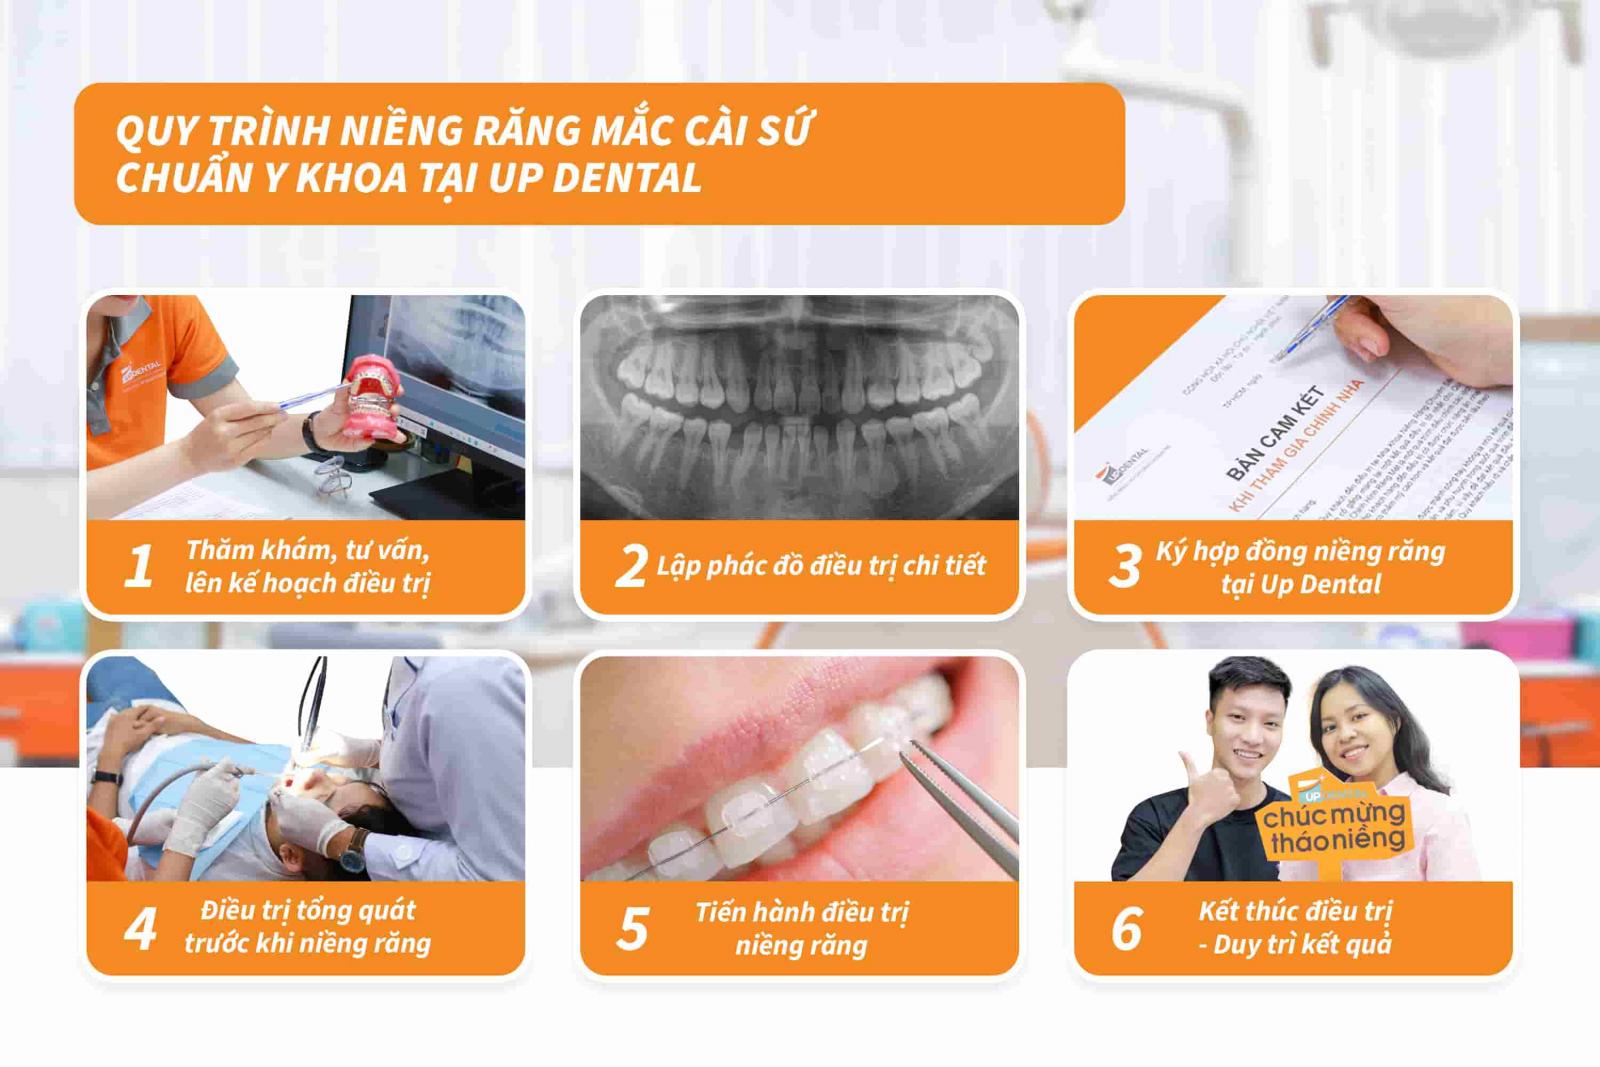 Quy trình niềng răng mắc cài sứ chuẩn Y khoa tại Up Dental